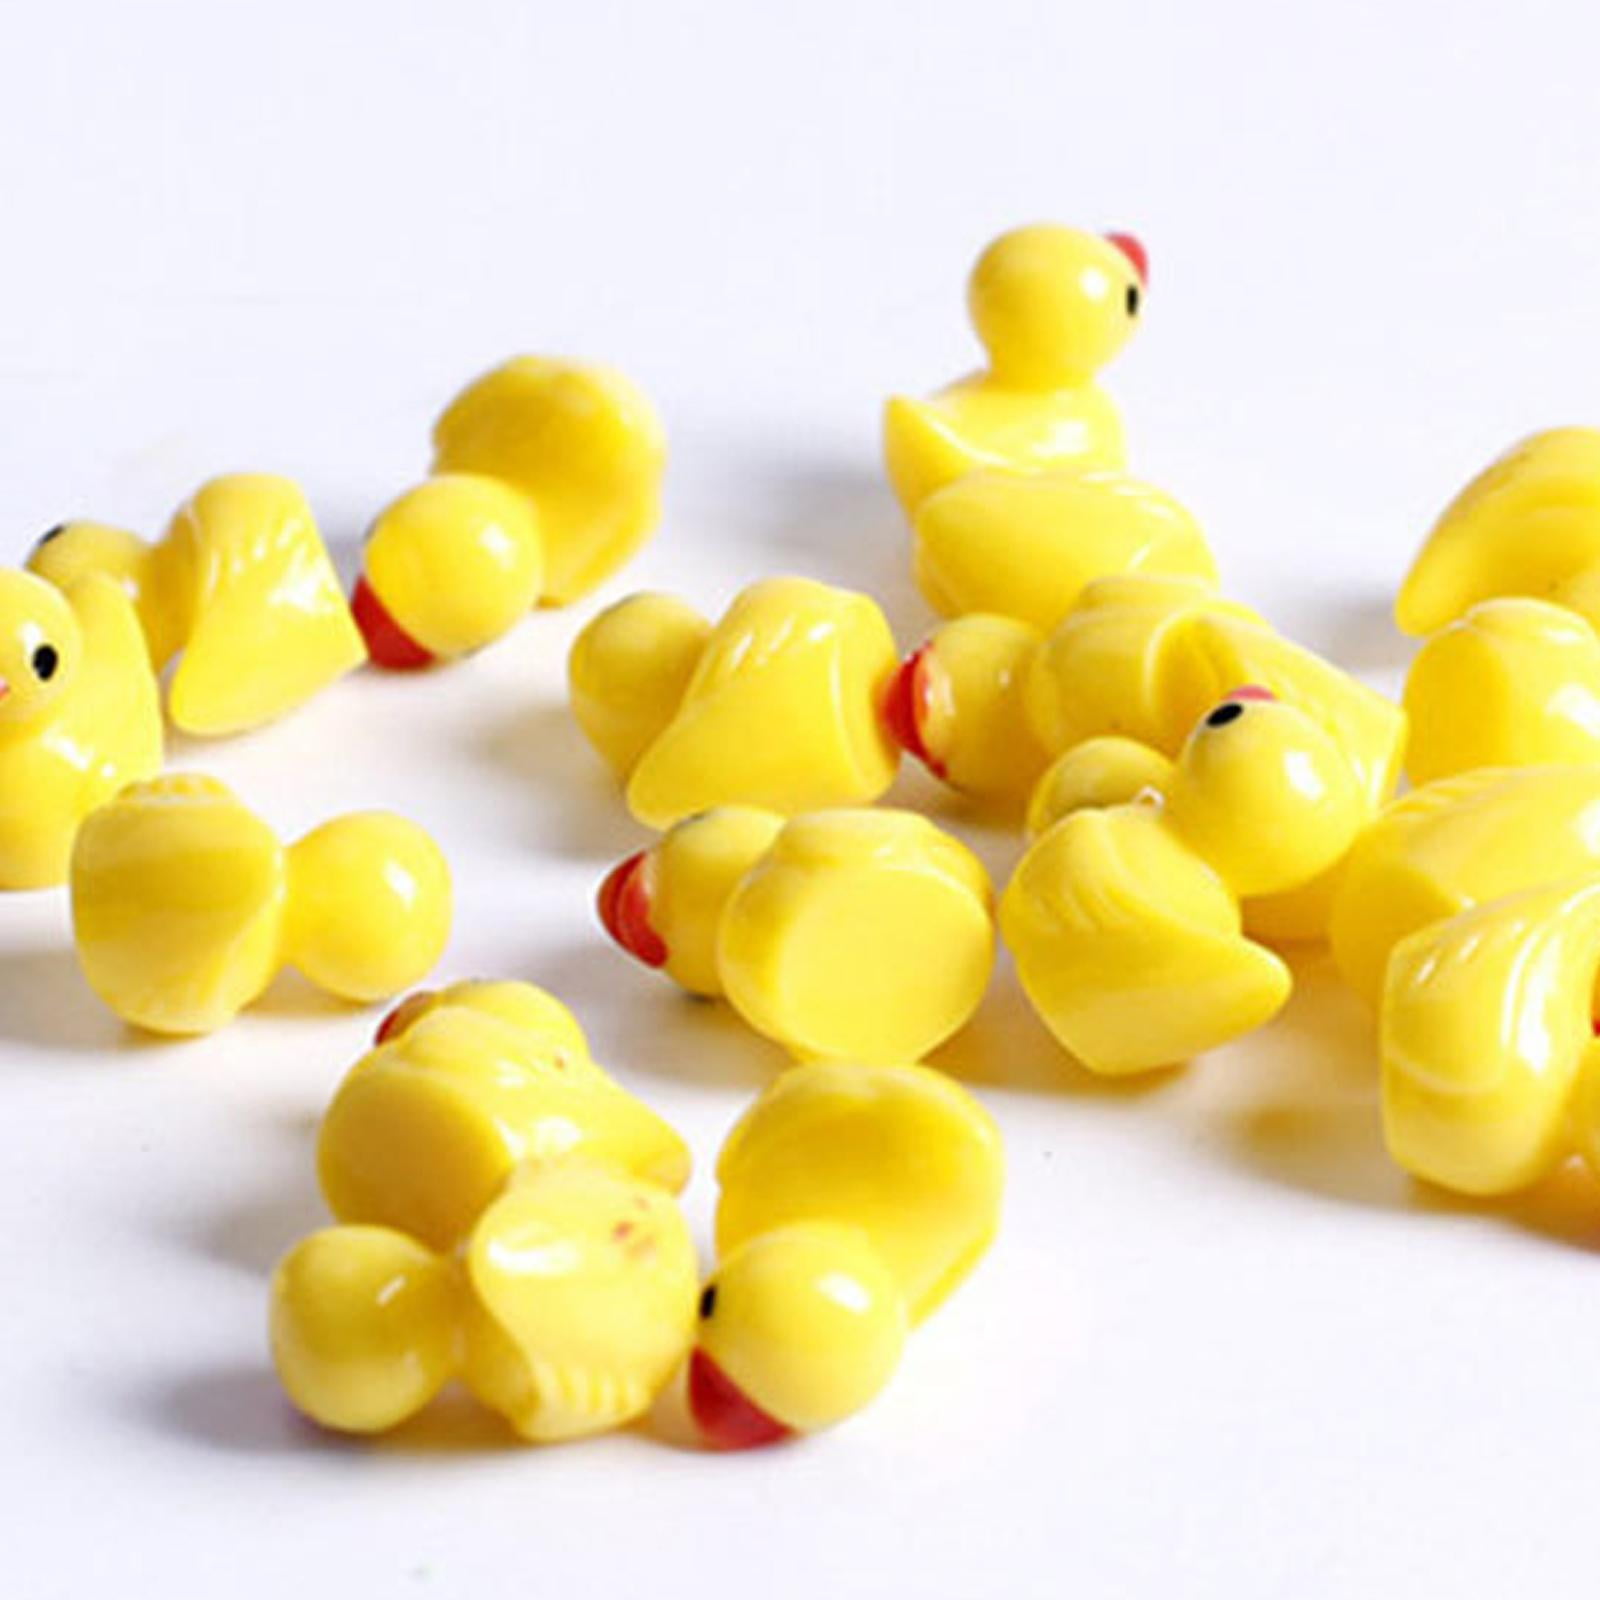 Xzbling 100PCS Mini Resin Duck Tiny Ducks Miniature Duck Figures